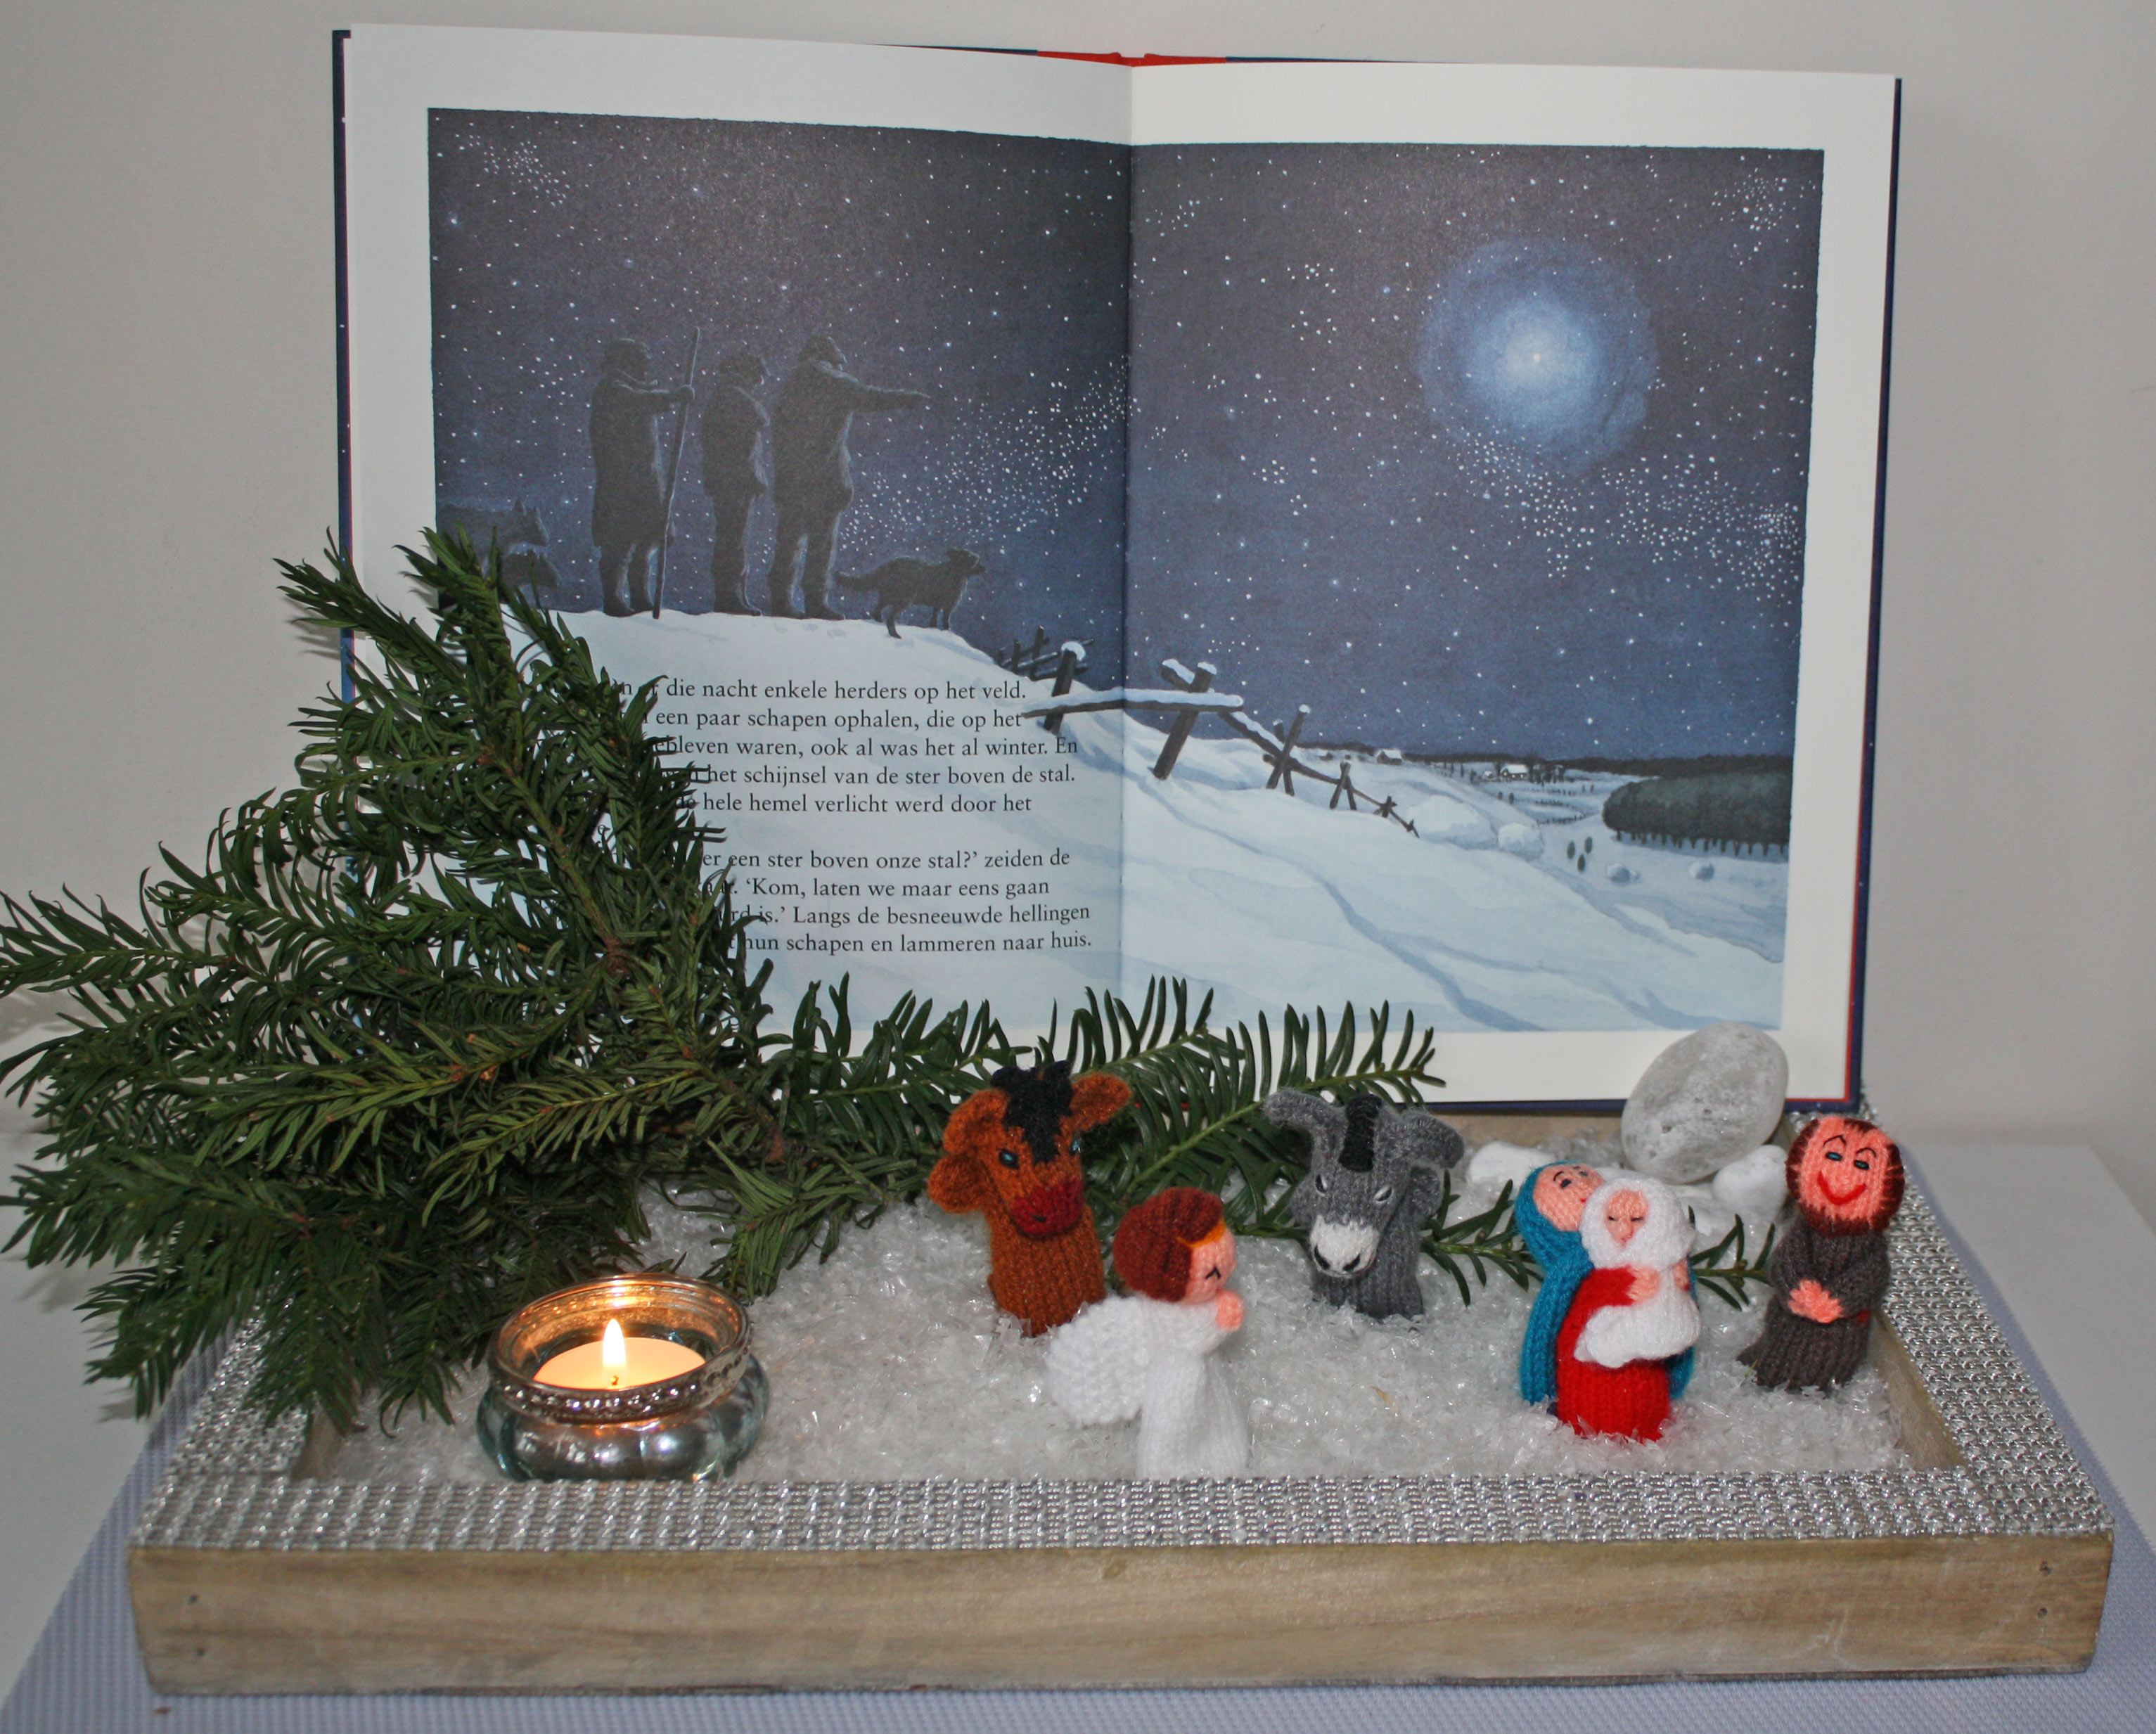 Kijktafel-Kerstmis-met-prentenboek-en-vingerpoppetjes-IMG 8741